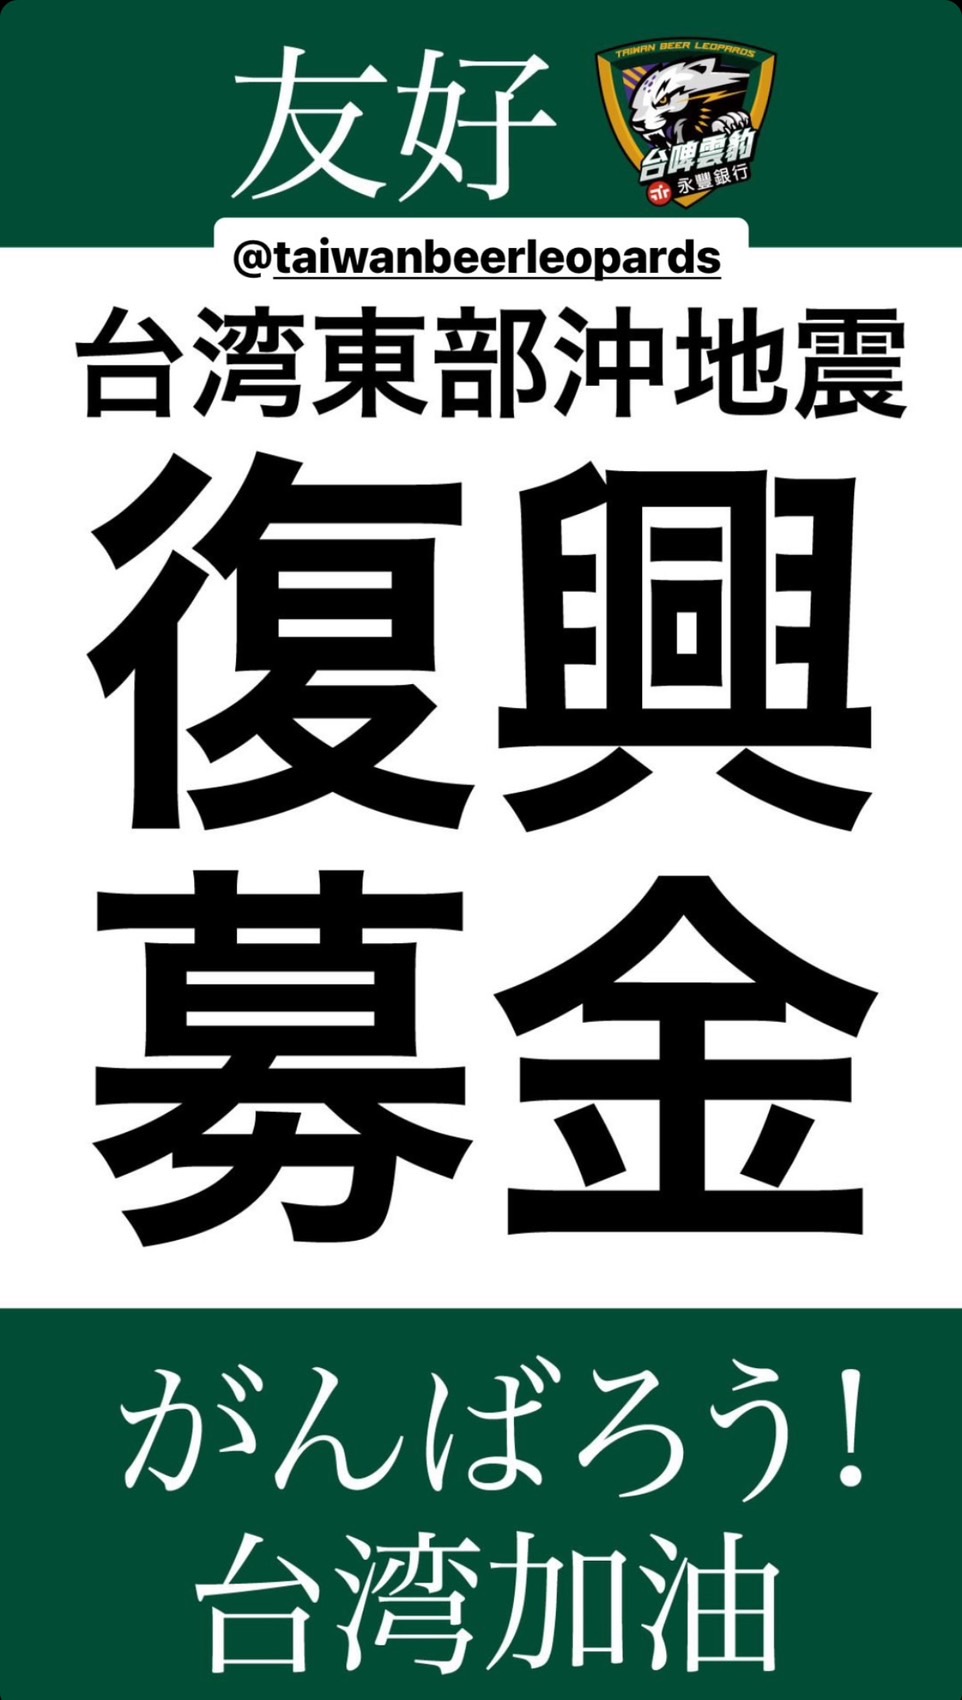 云豹队友好球队B联盟第2级熊本Volters队发起为台湾震灾募款。图／台啤永丰云豹队提供